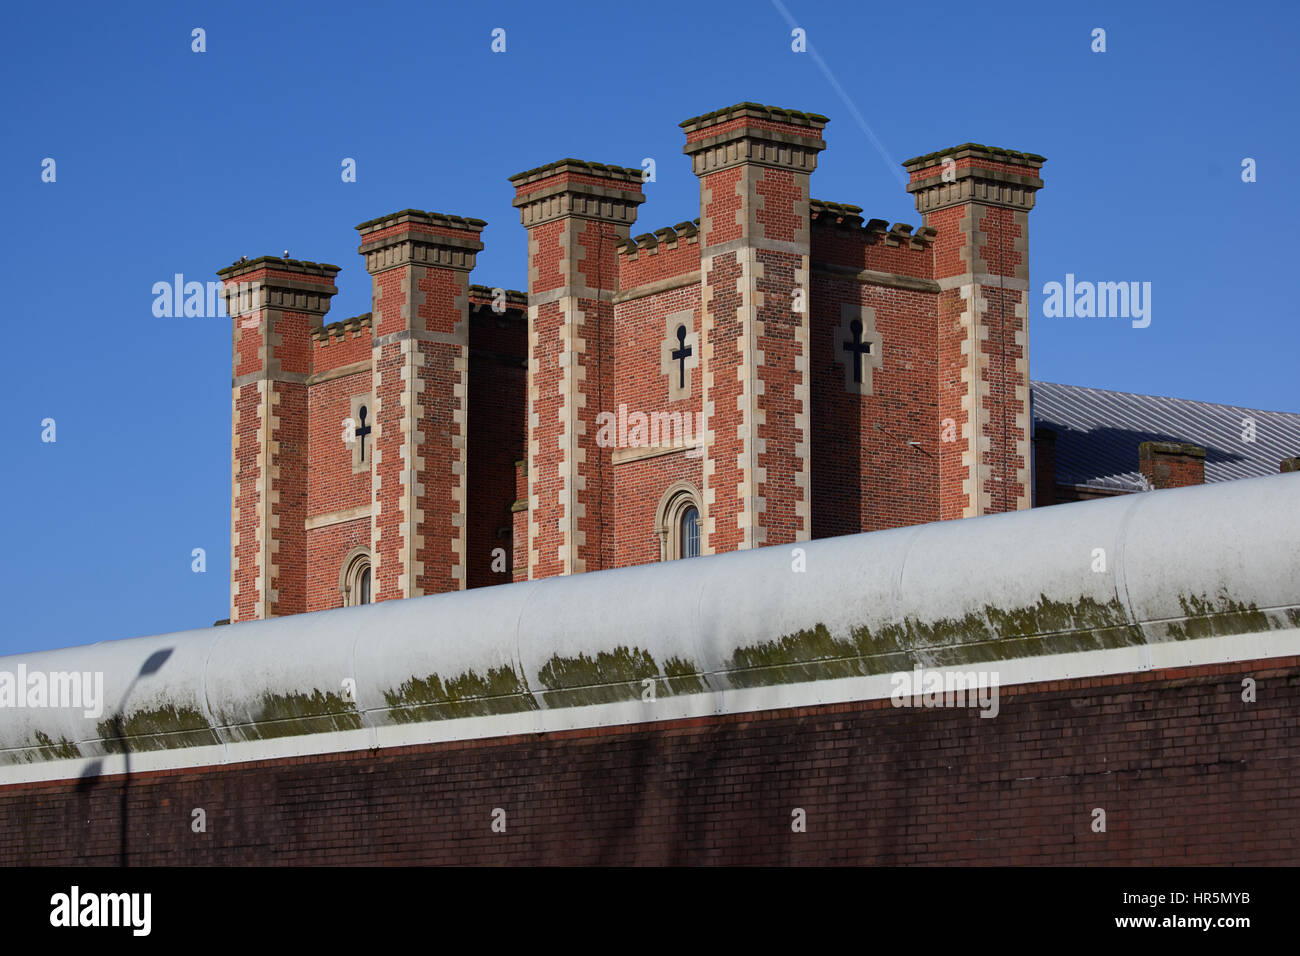 Sonniger Tag am HMP Liverpool Walton Gefängnis Männer früher Gefängnis zeigt der viktorianischen Architektur in Merseyside, England, UK Stockfoto